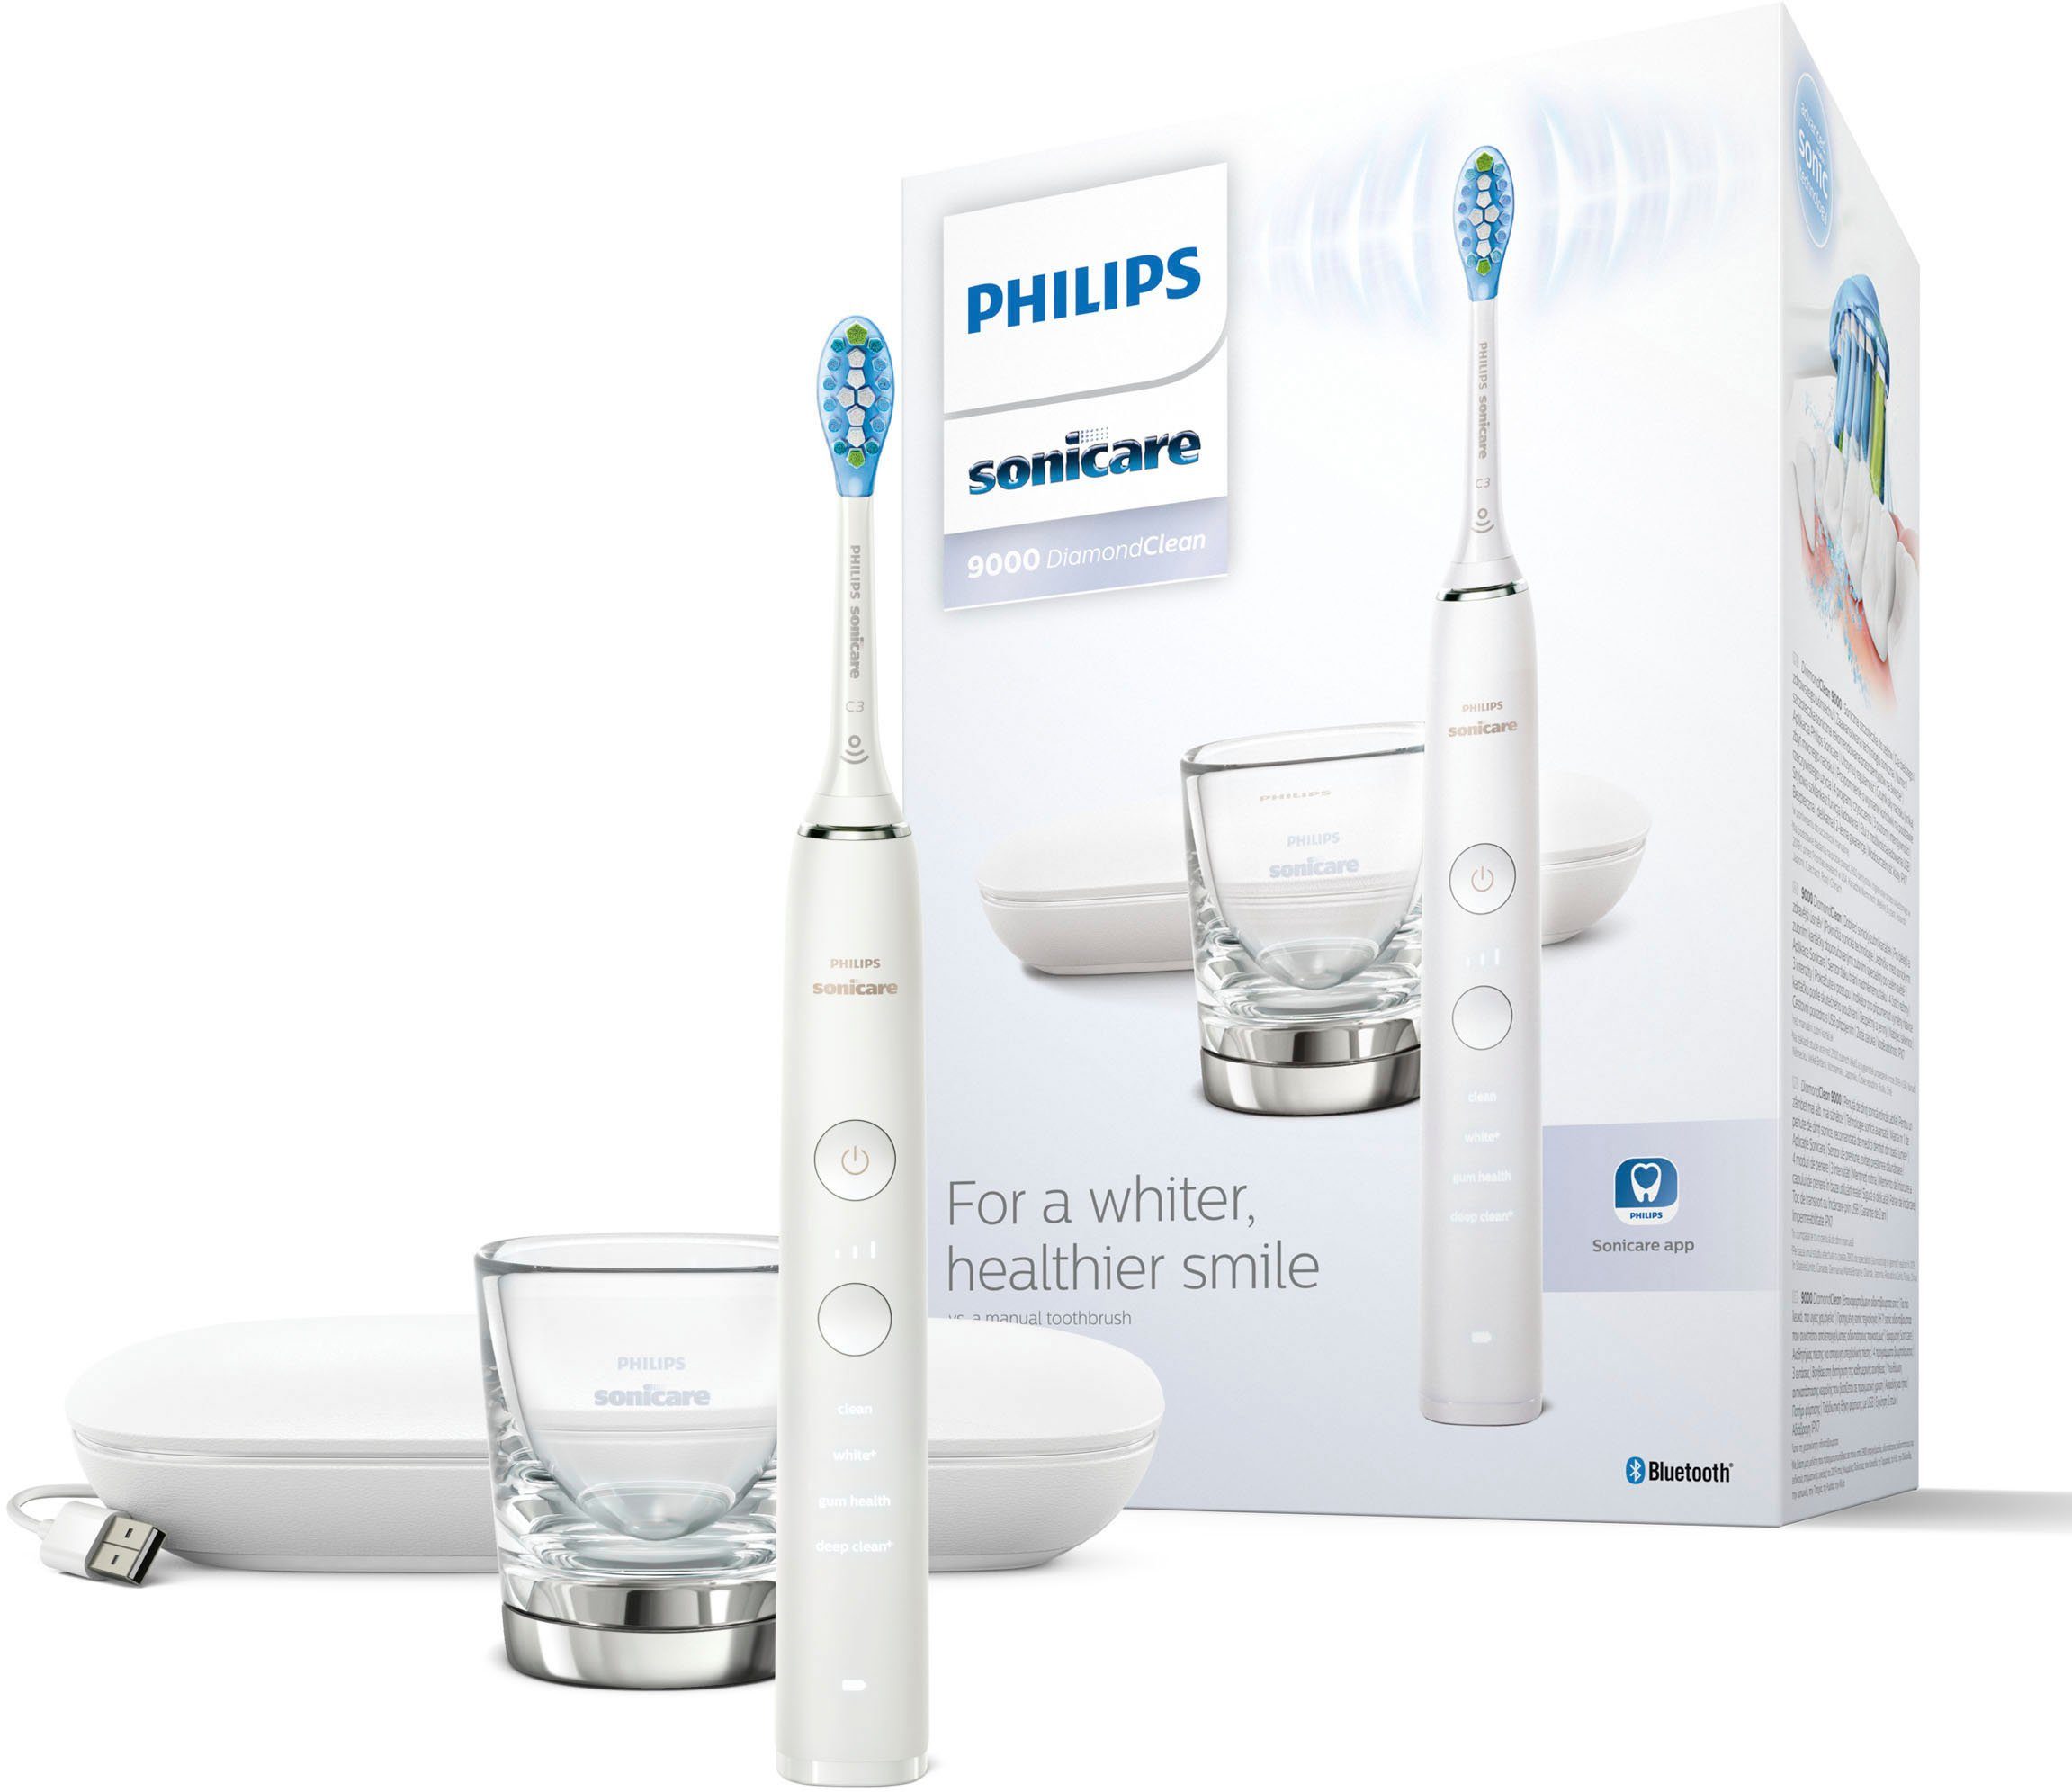 Philips Sonicare Elektrische Zahnbürste DiamondClean 9000 HX9911,  Aufsteckbürsten: 1 St., mit Schalltechnologie, Ladeglass, USB-Reiseetui  online kaufen | OTTO